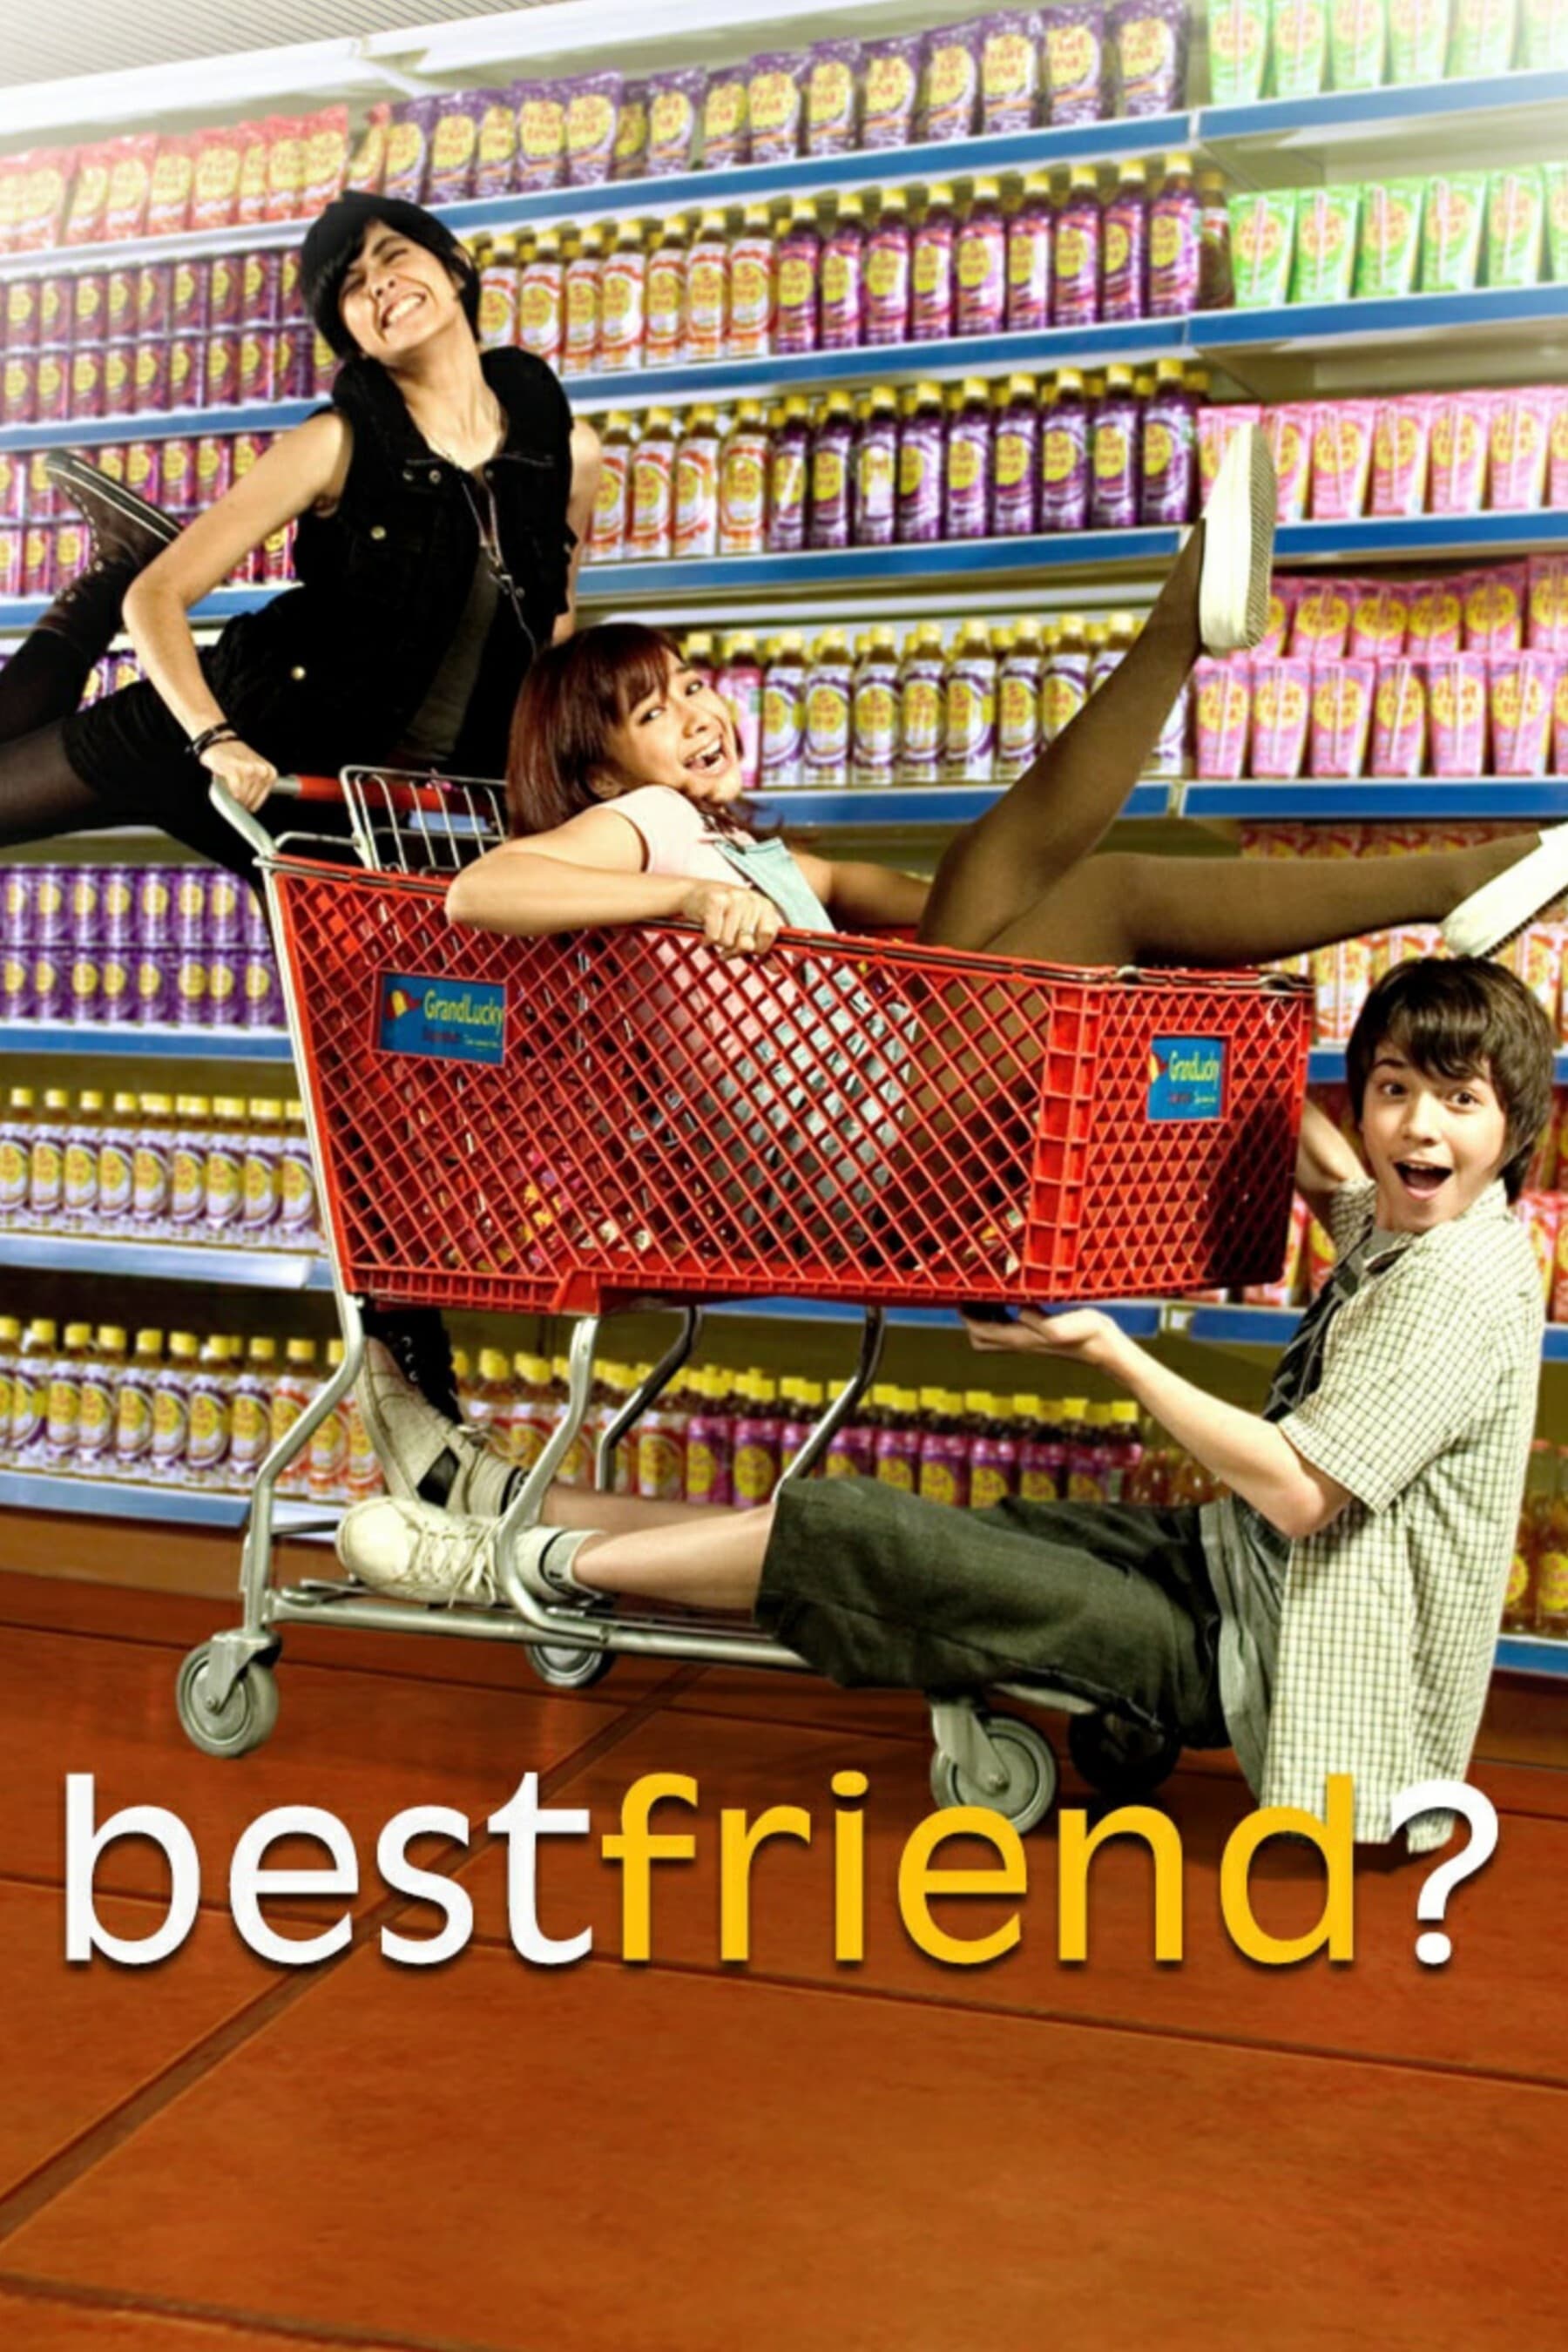 Best Friend? (2008)